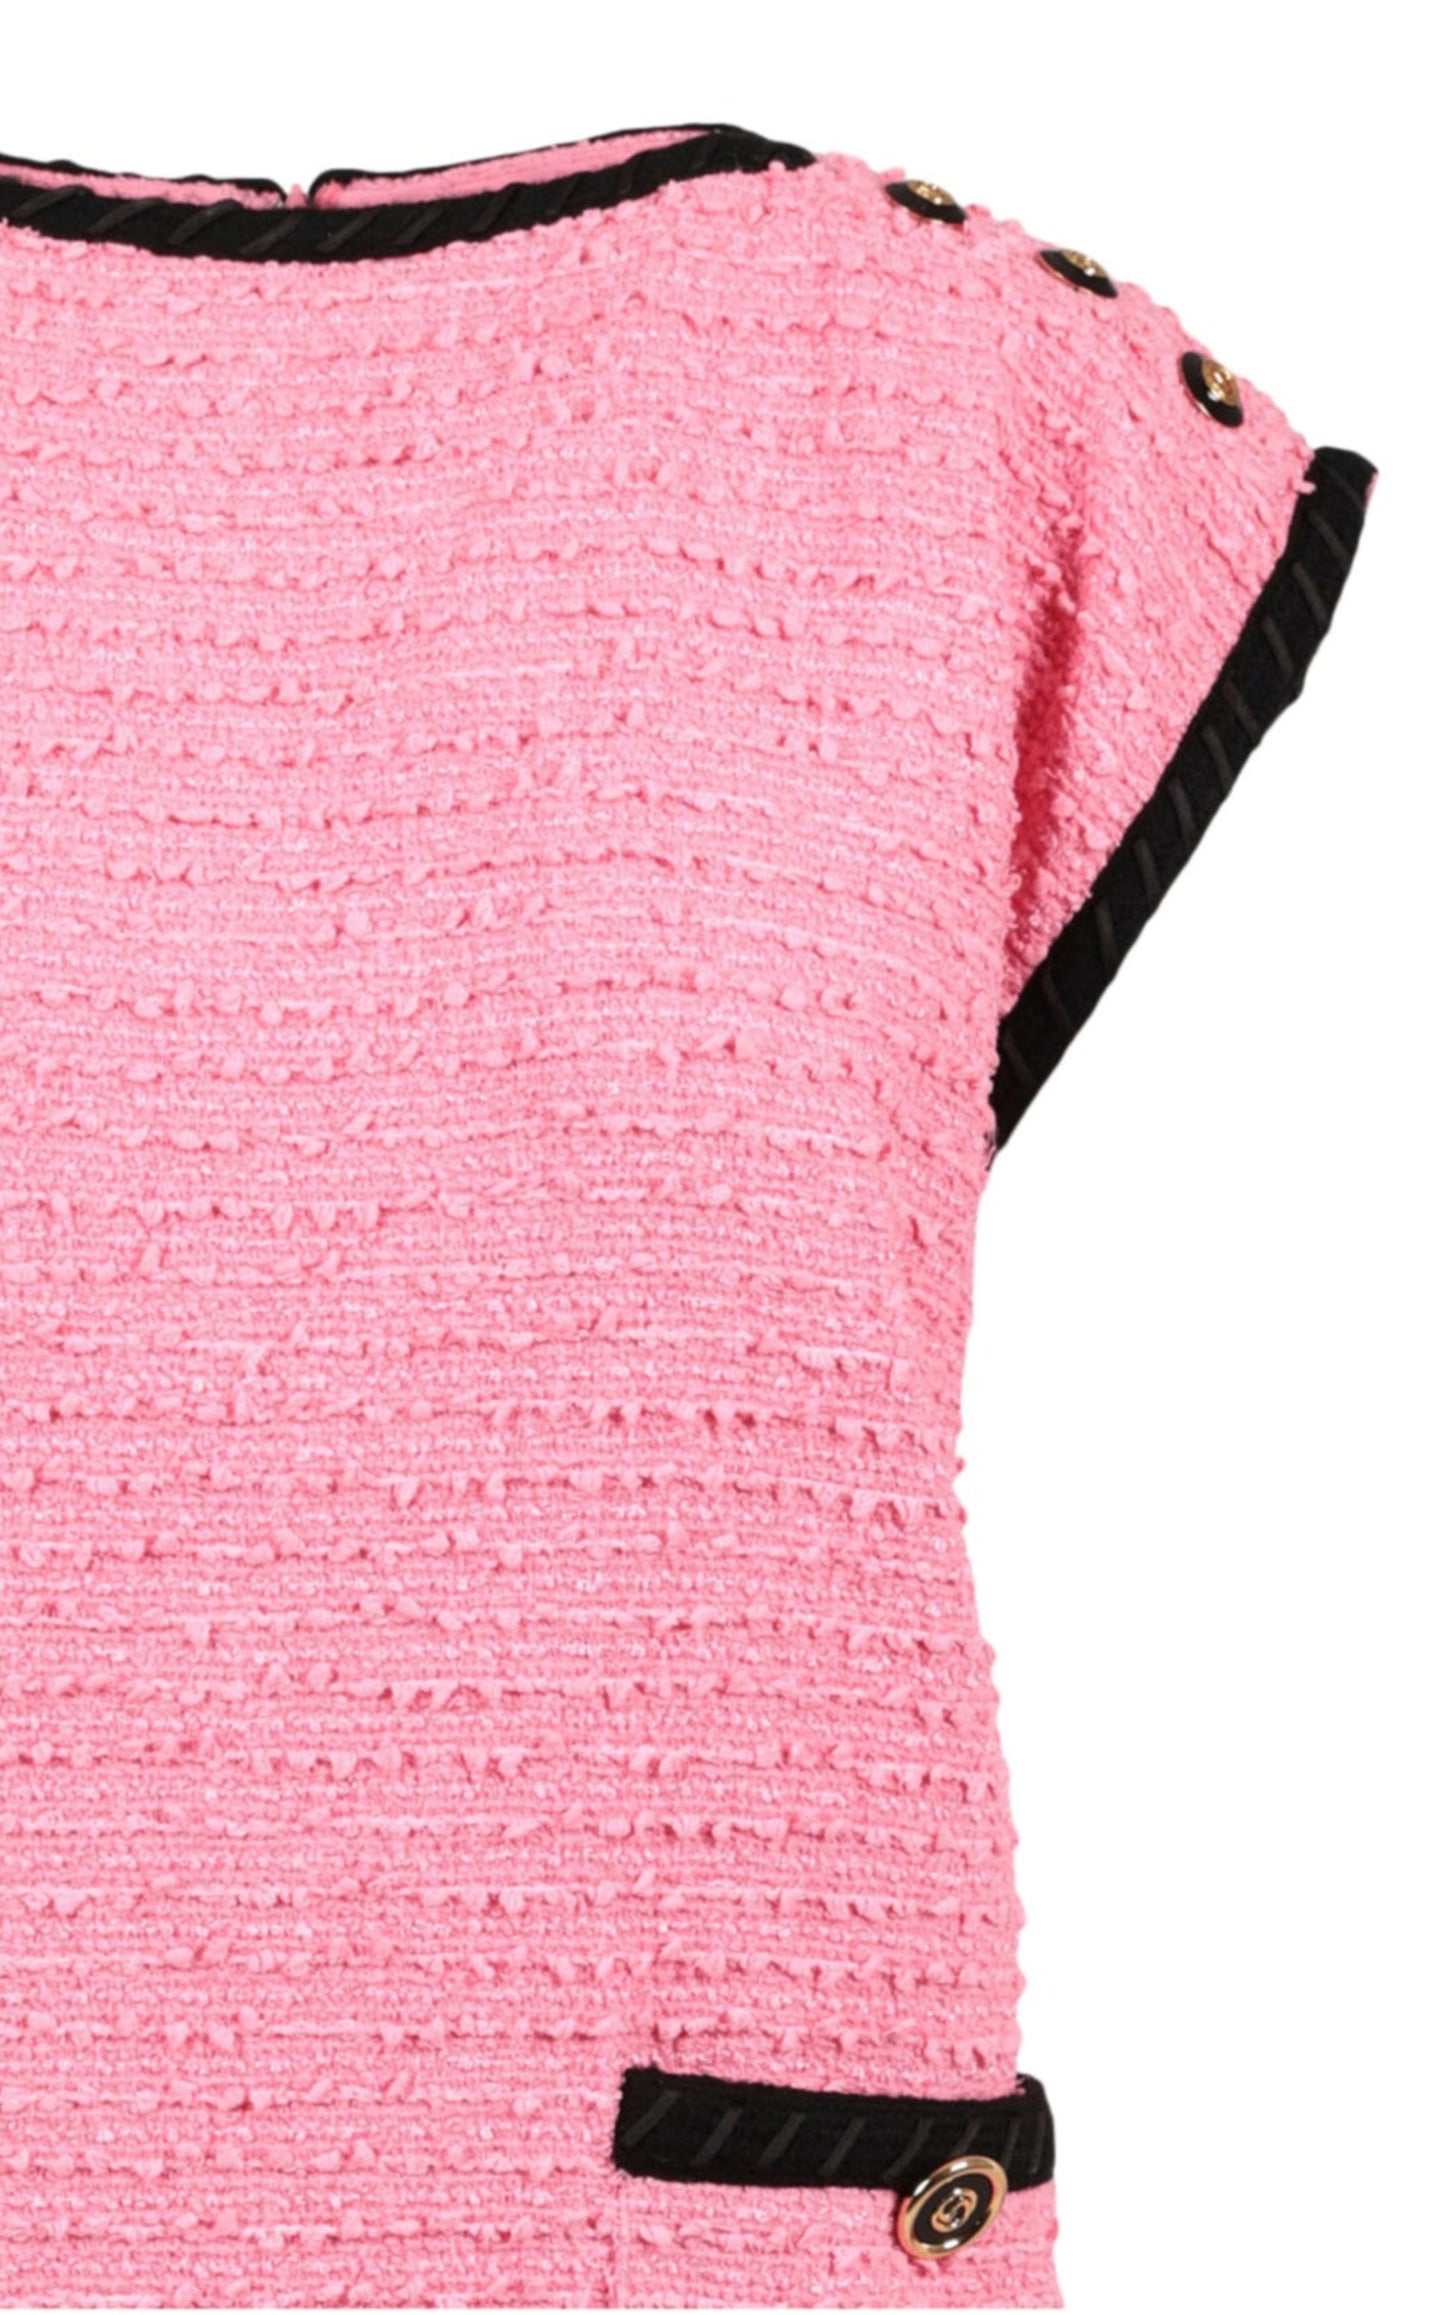 羊毛混纺粉色直筒连衣裙